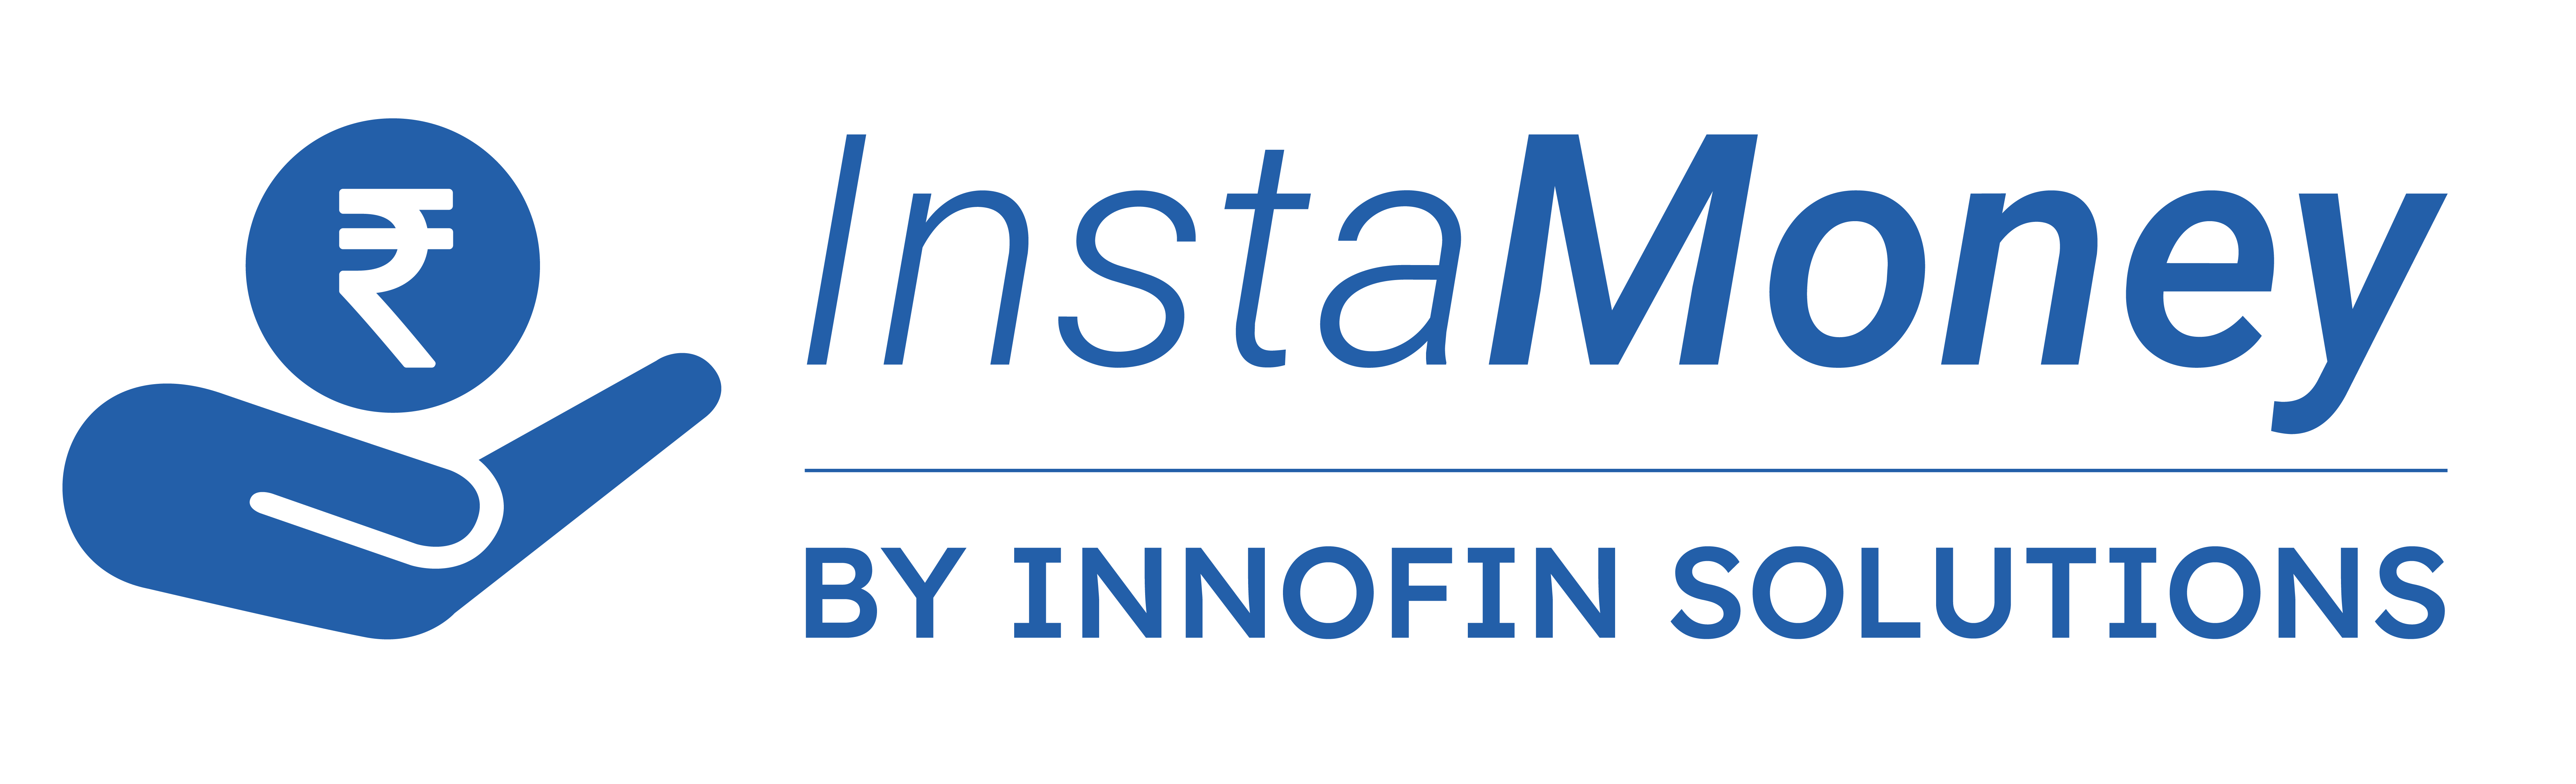 InstaMoney logo